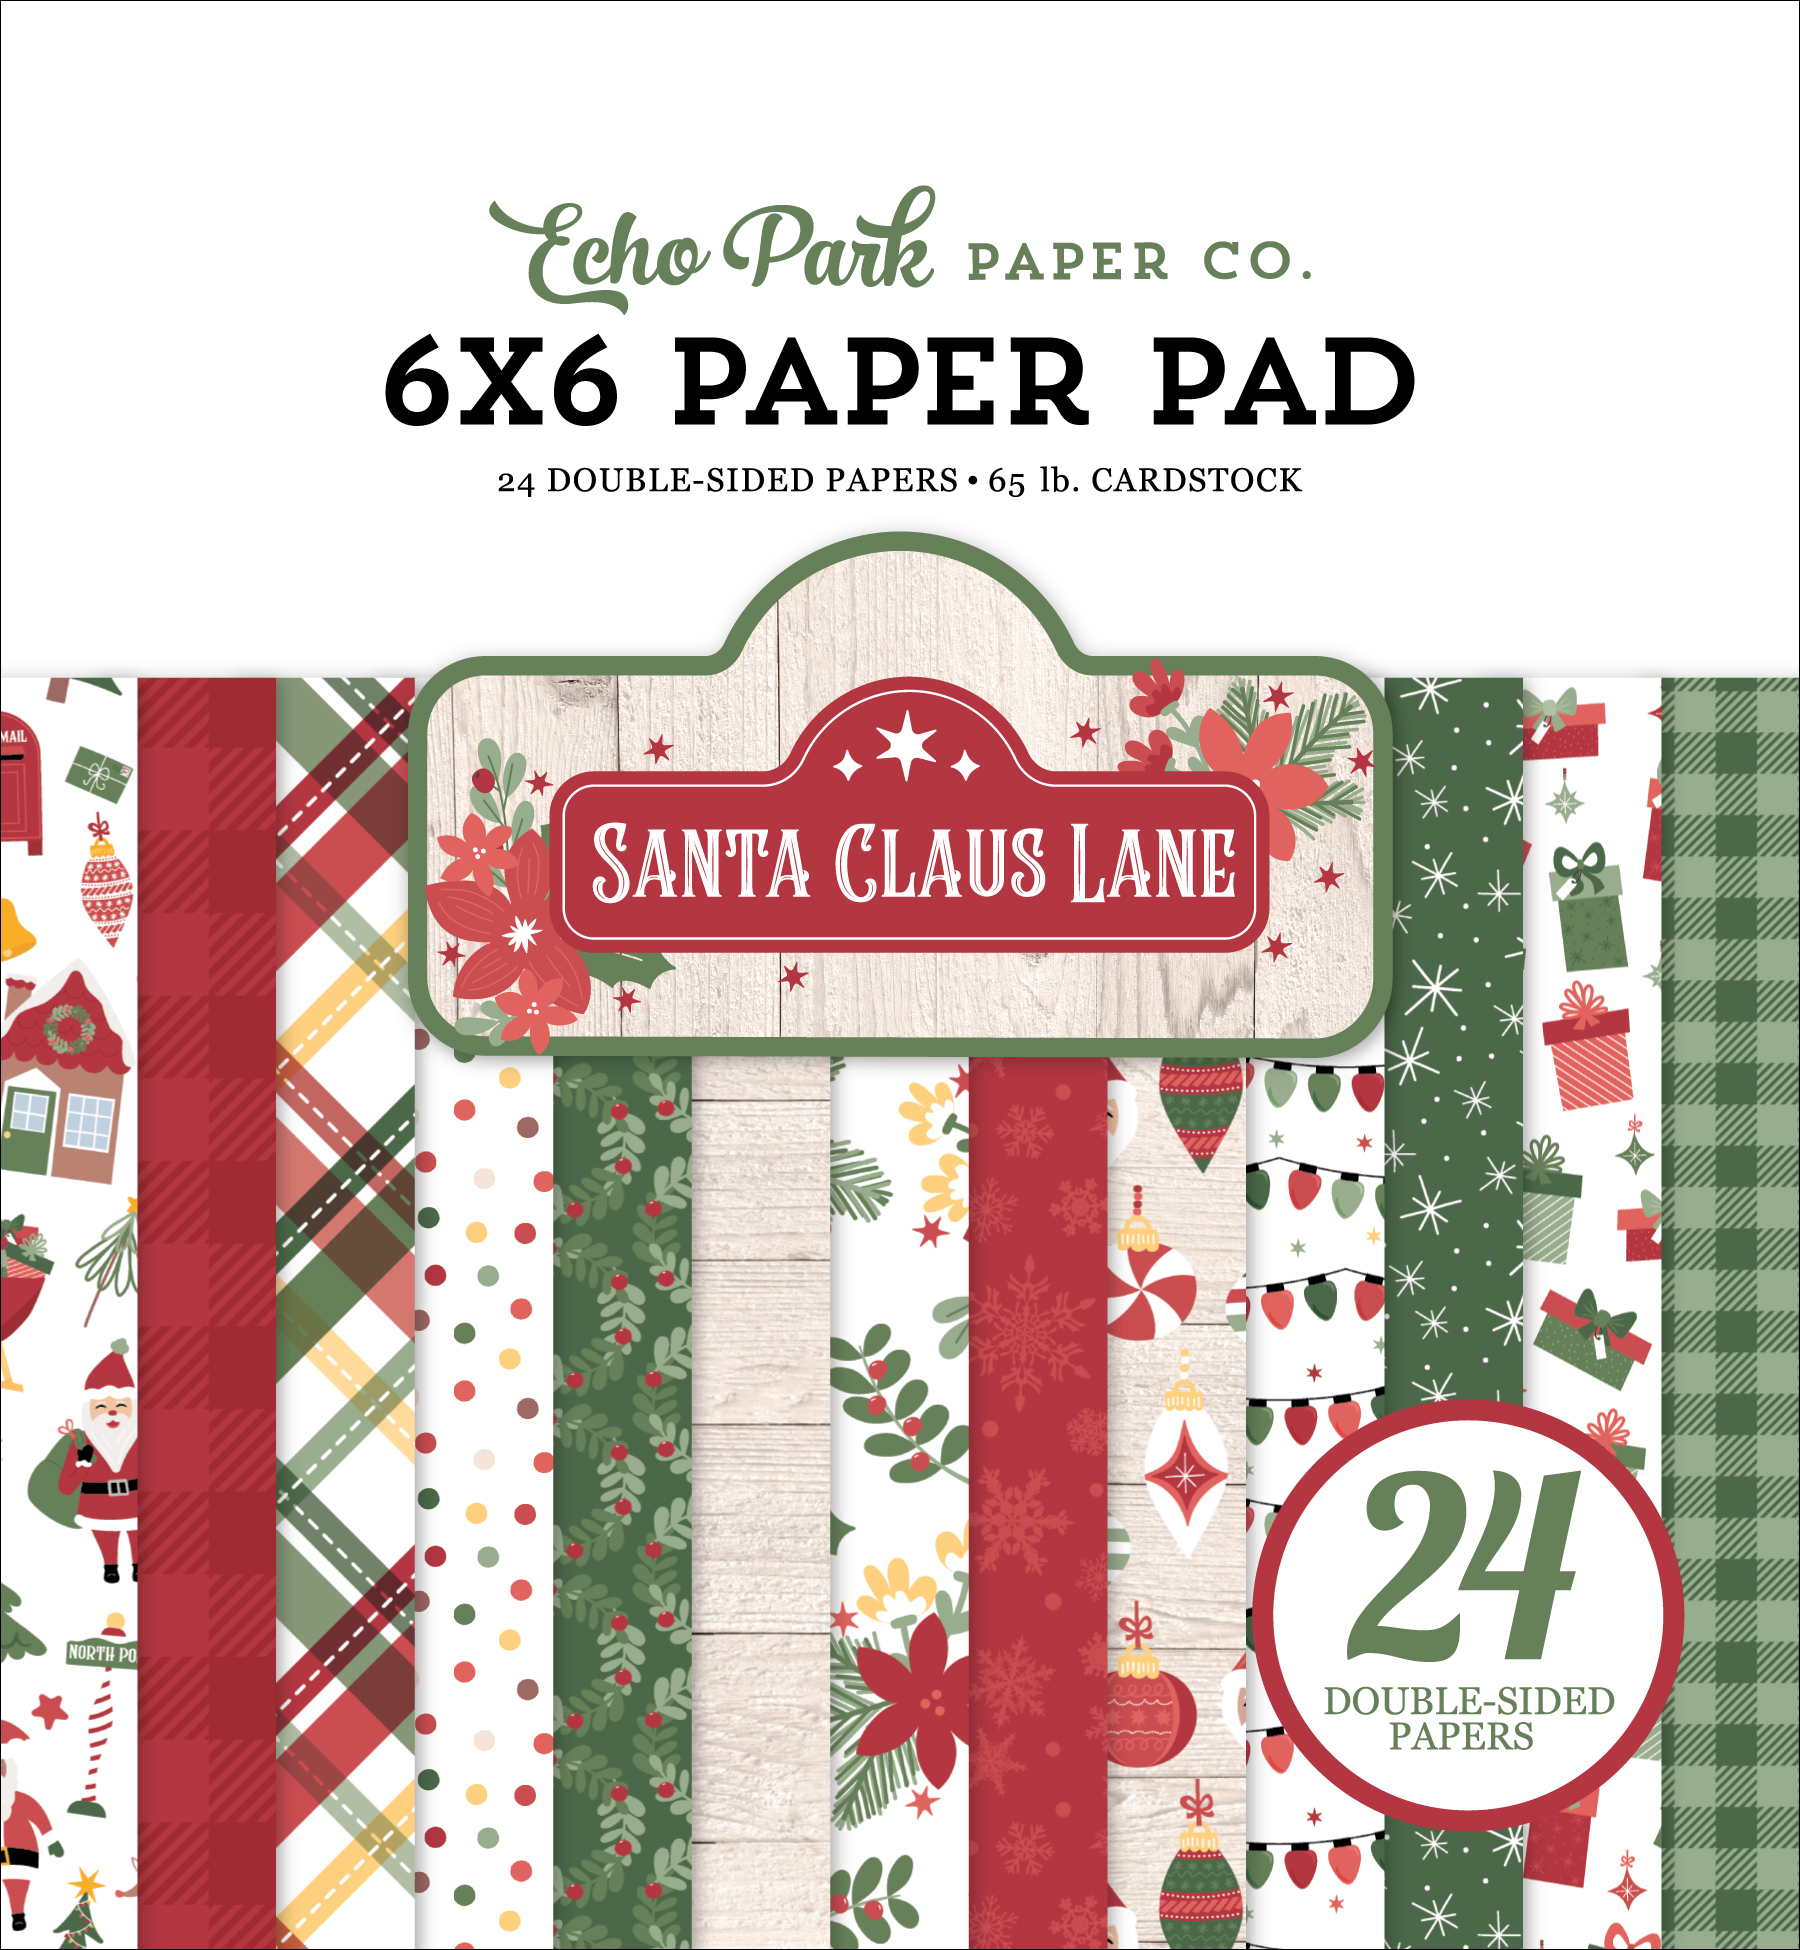 Santa Claus Lane 6x6 Paper Pad - Echo Park Paper Co.